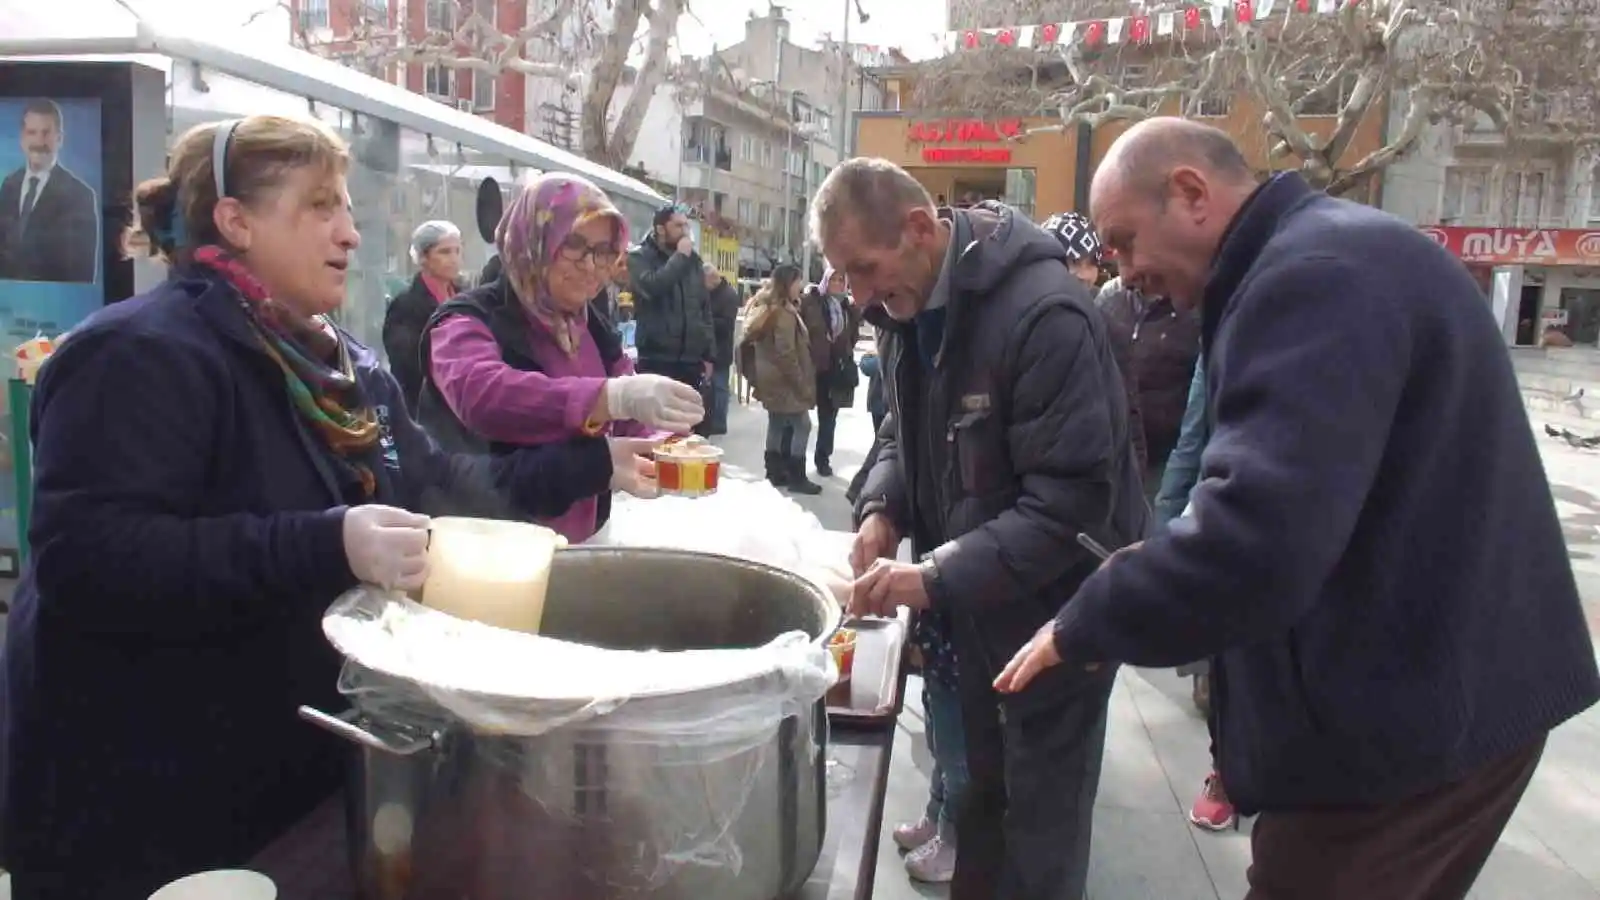 Balıkesir’de 2 bin kişiye zeytinyağlı çorba ikramı
